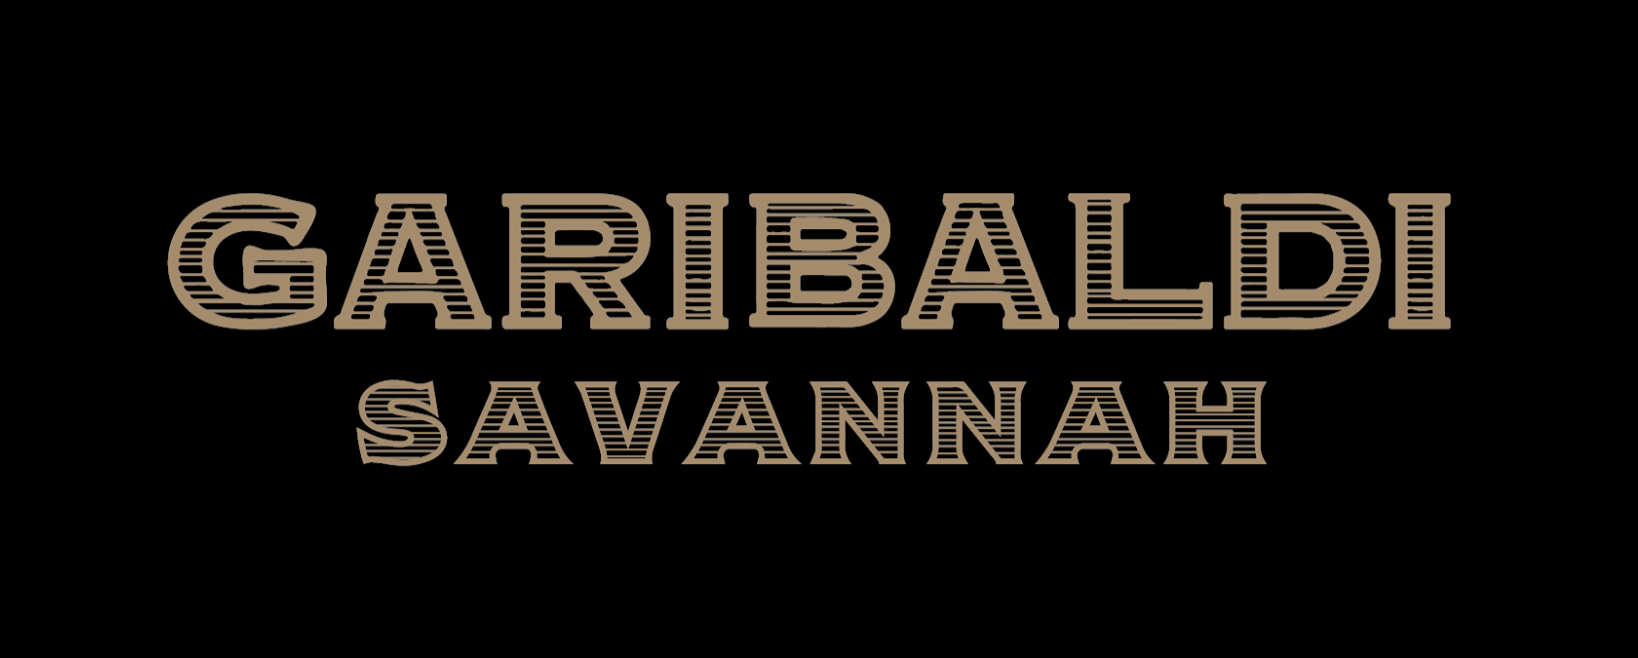 Garibaldi - Savannah